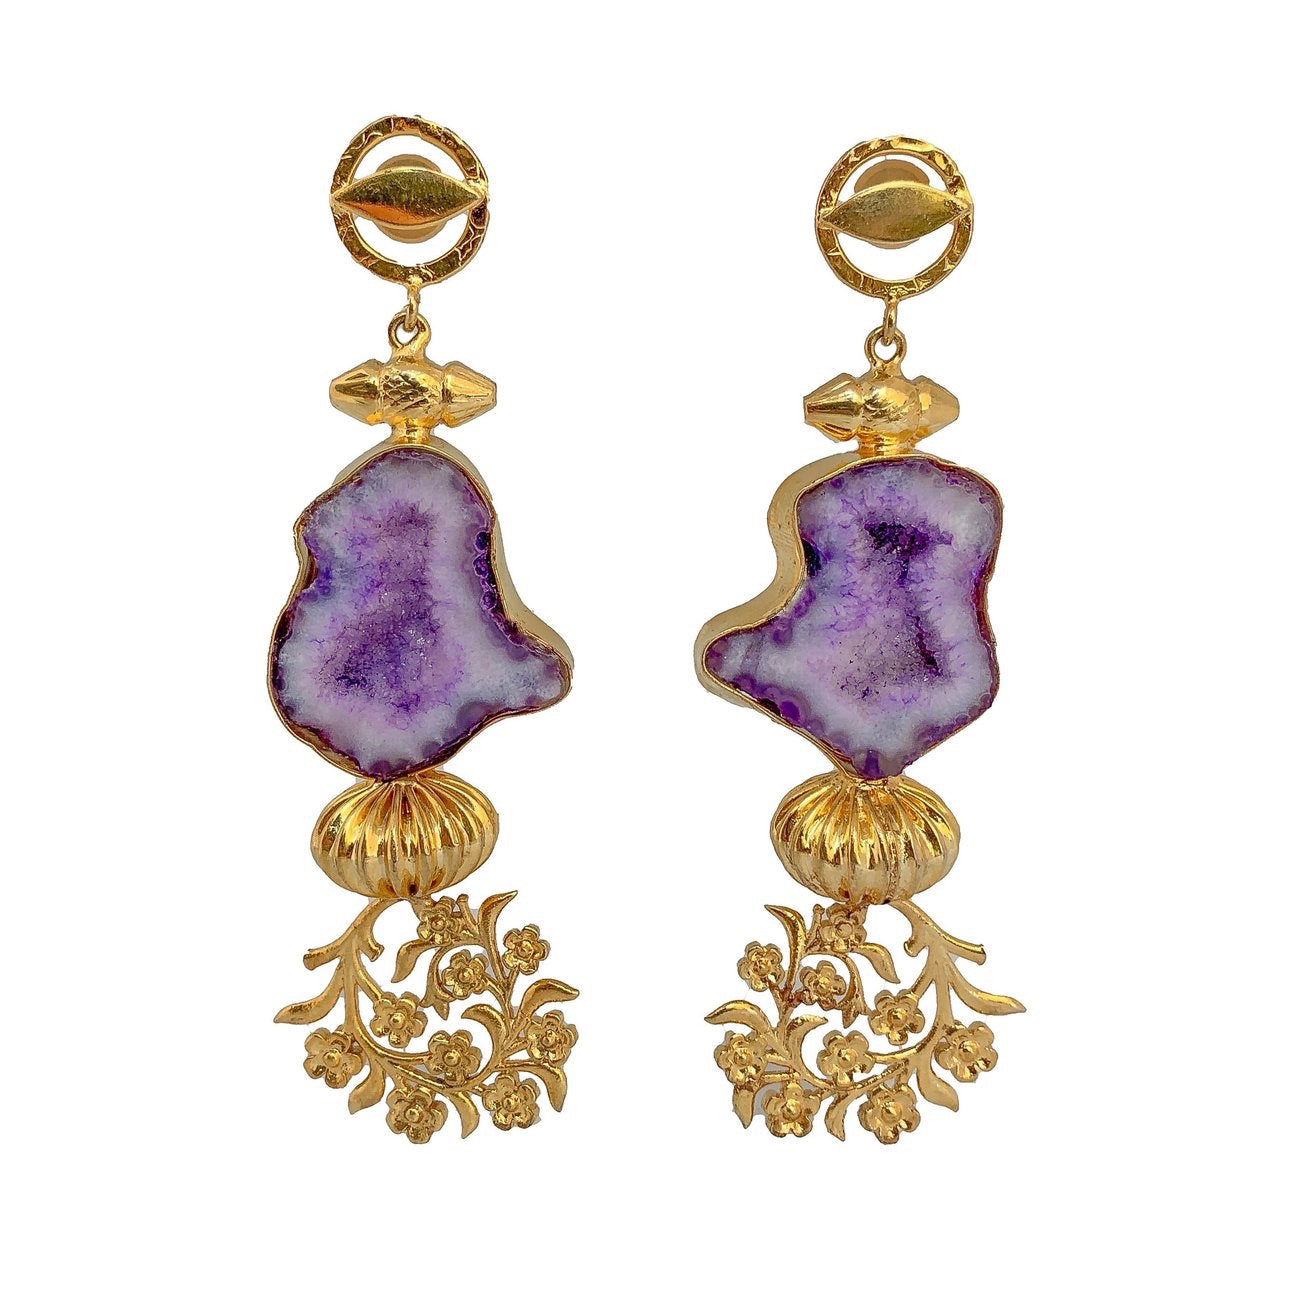 Handcrafted Artisan Earrings | Luxury Gold Plated Earrings | Statement Earrings by Tanya Litkovska